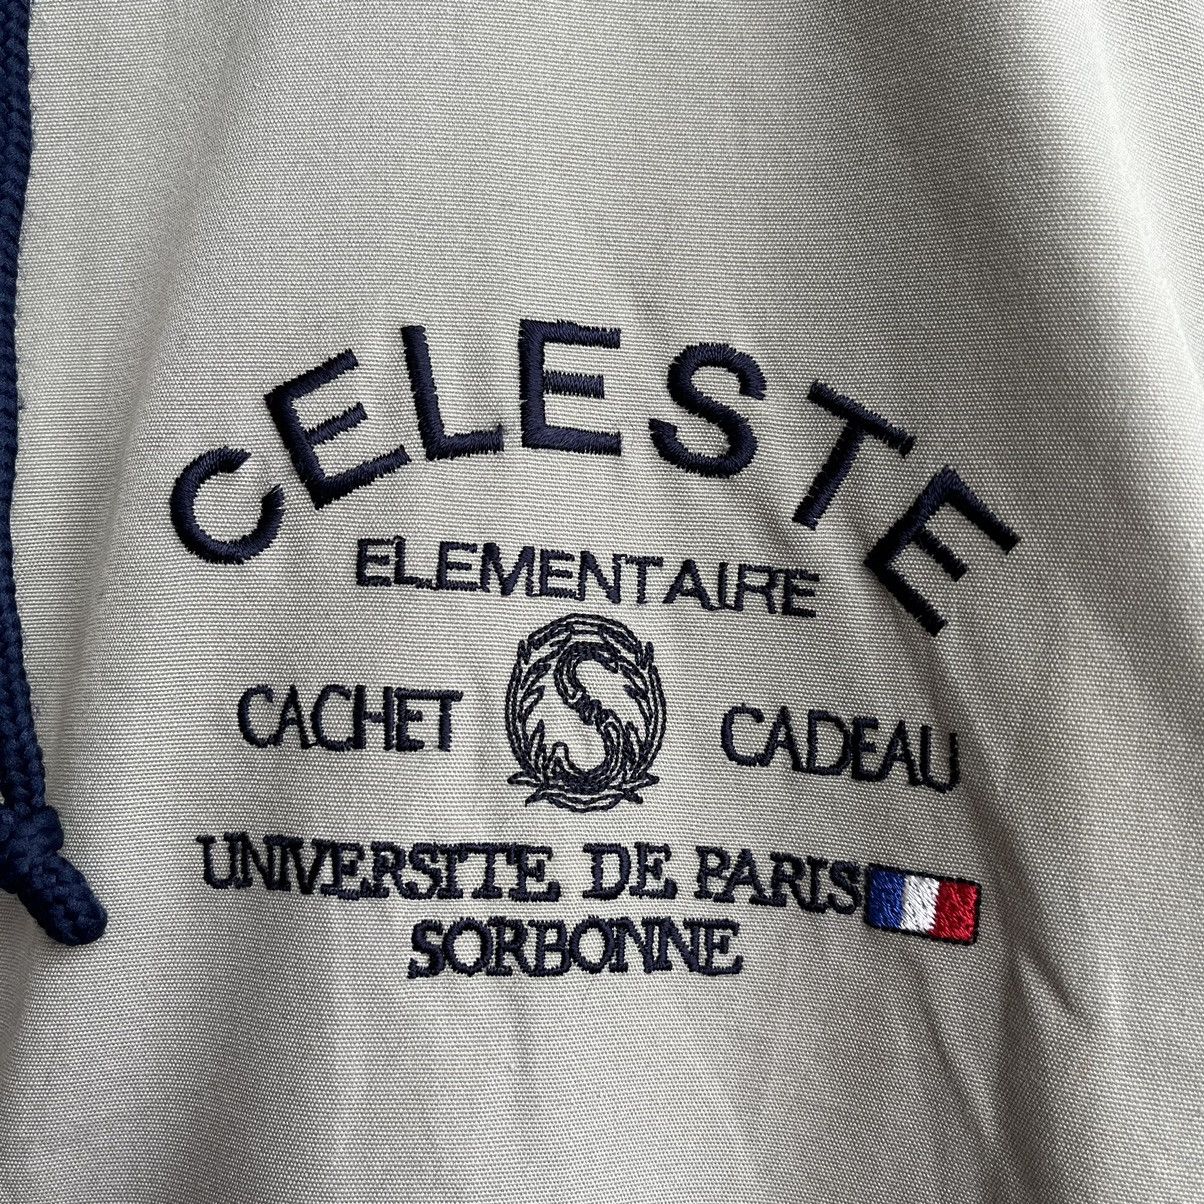 Vintage Celeste Universite De Paris Sorbonne Parka Jacket - 6